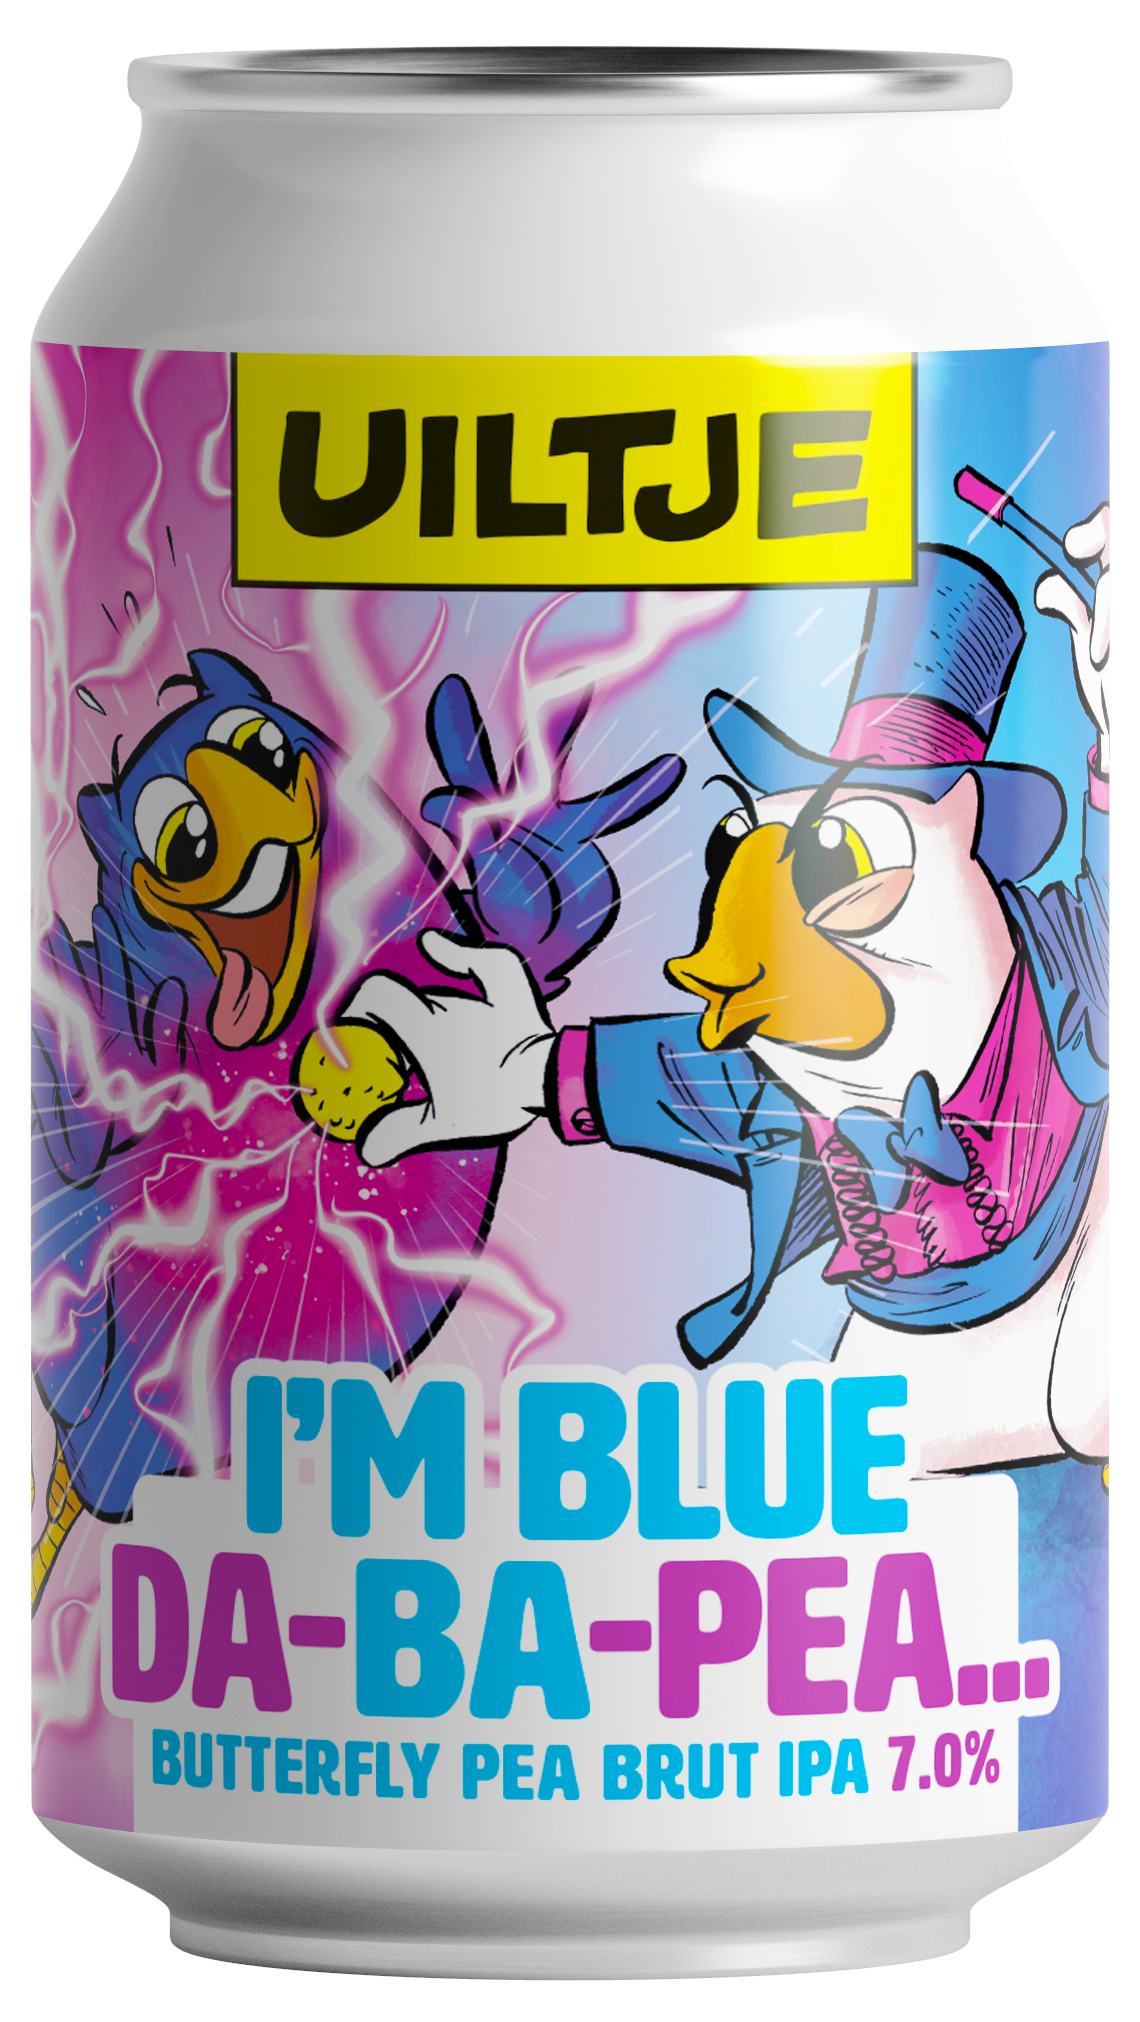 I’m Blue Da-Ba-Pea